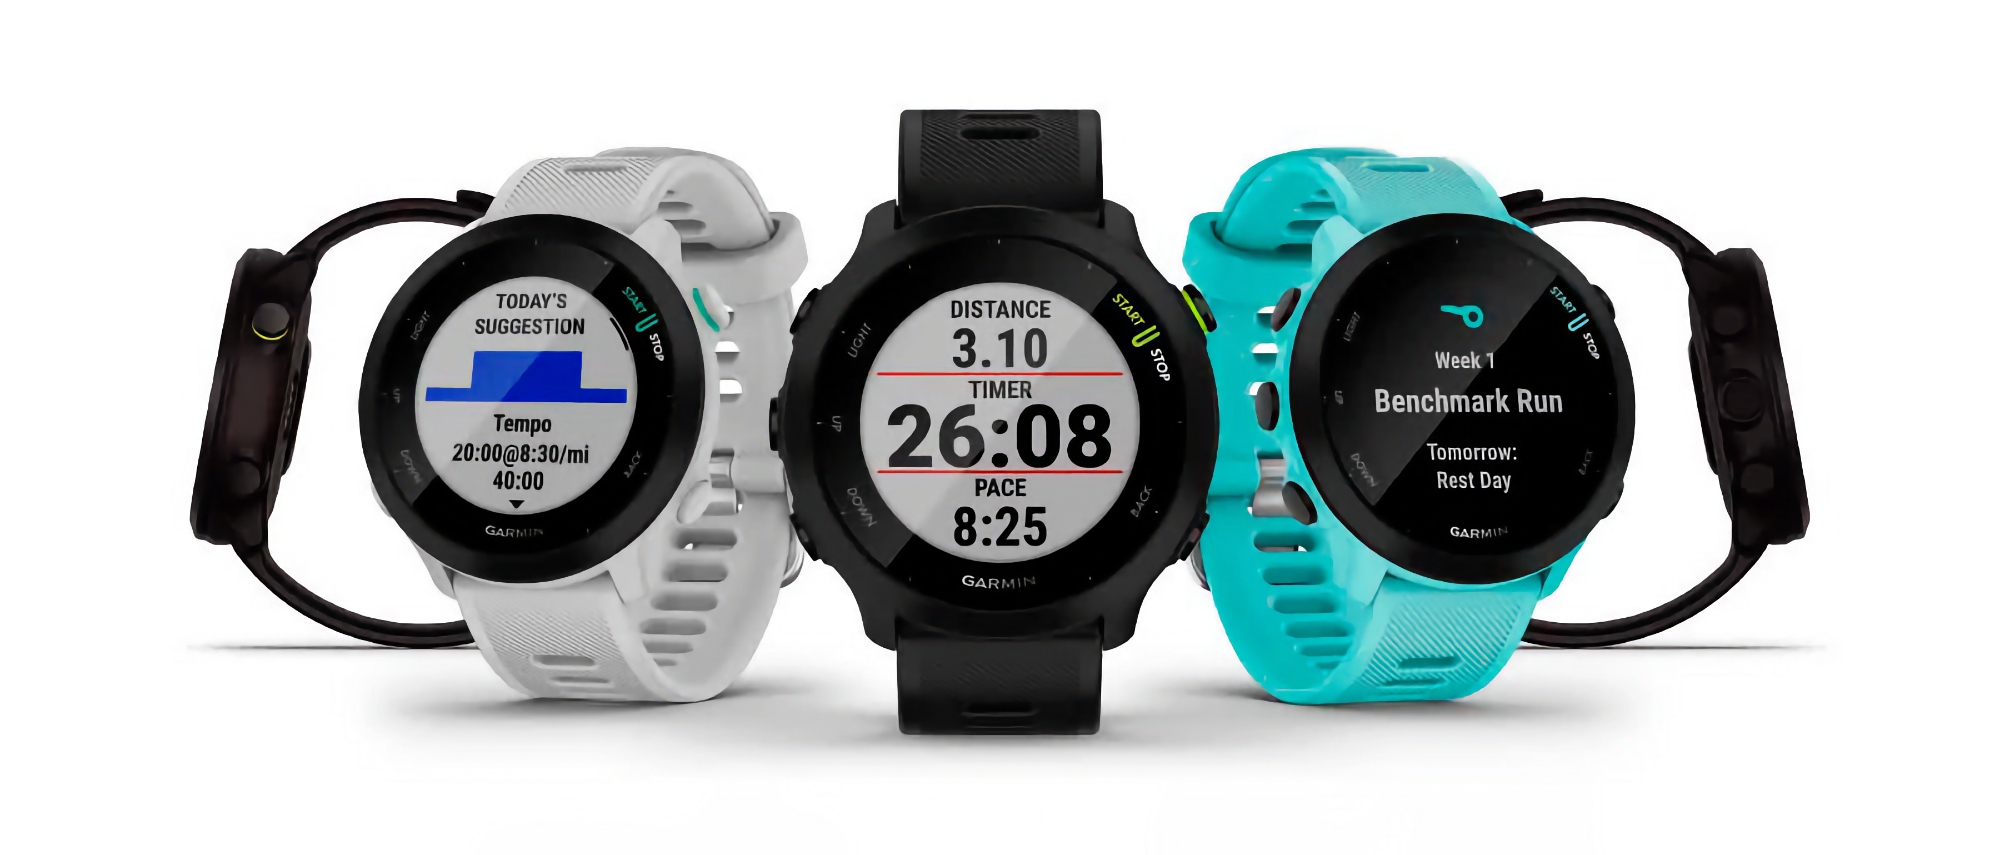 Il successore del Forerunner 55: Le specifiche dello smartwatch sportivo Garmin Forerunner 165 sono apparse online